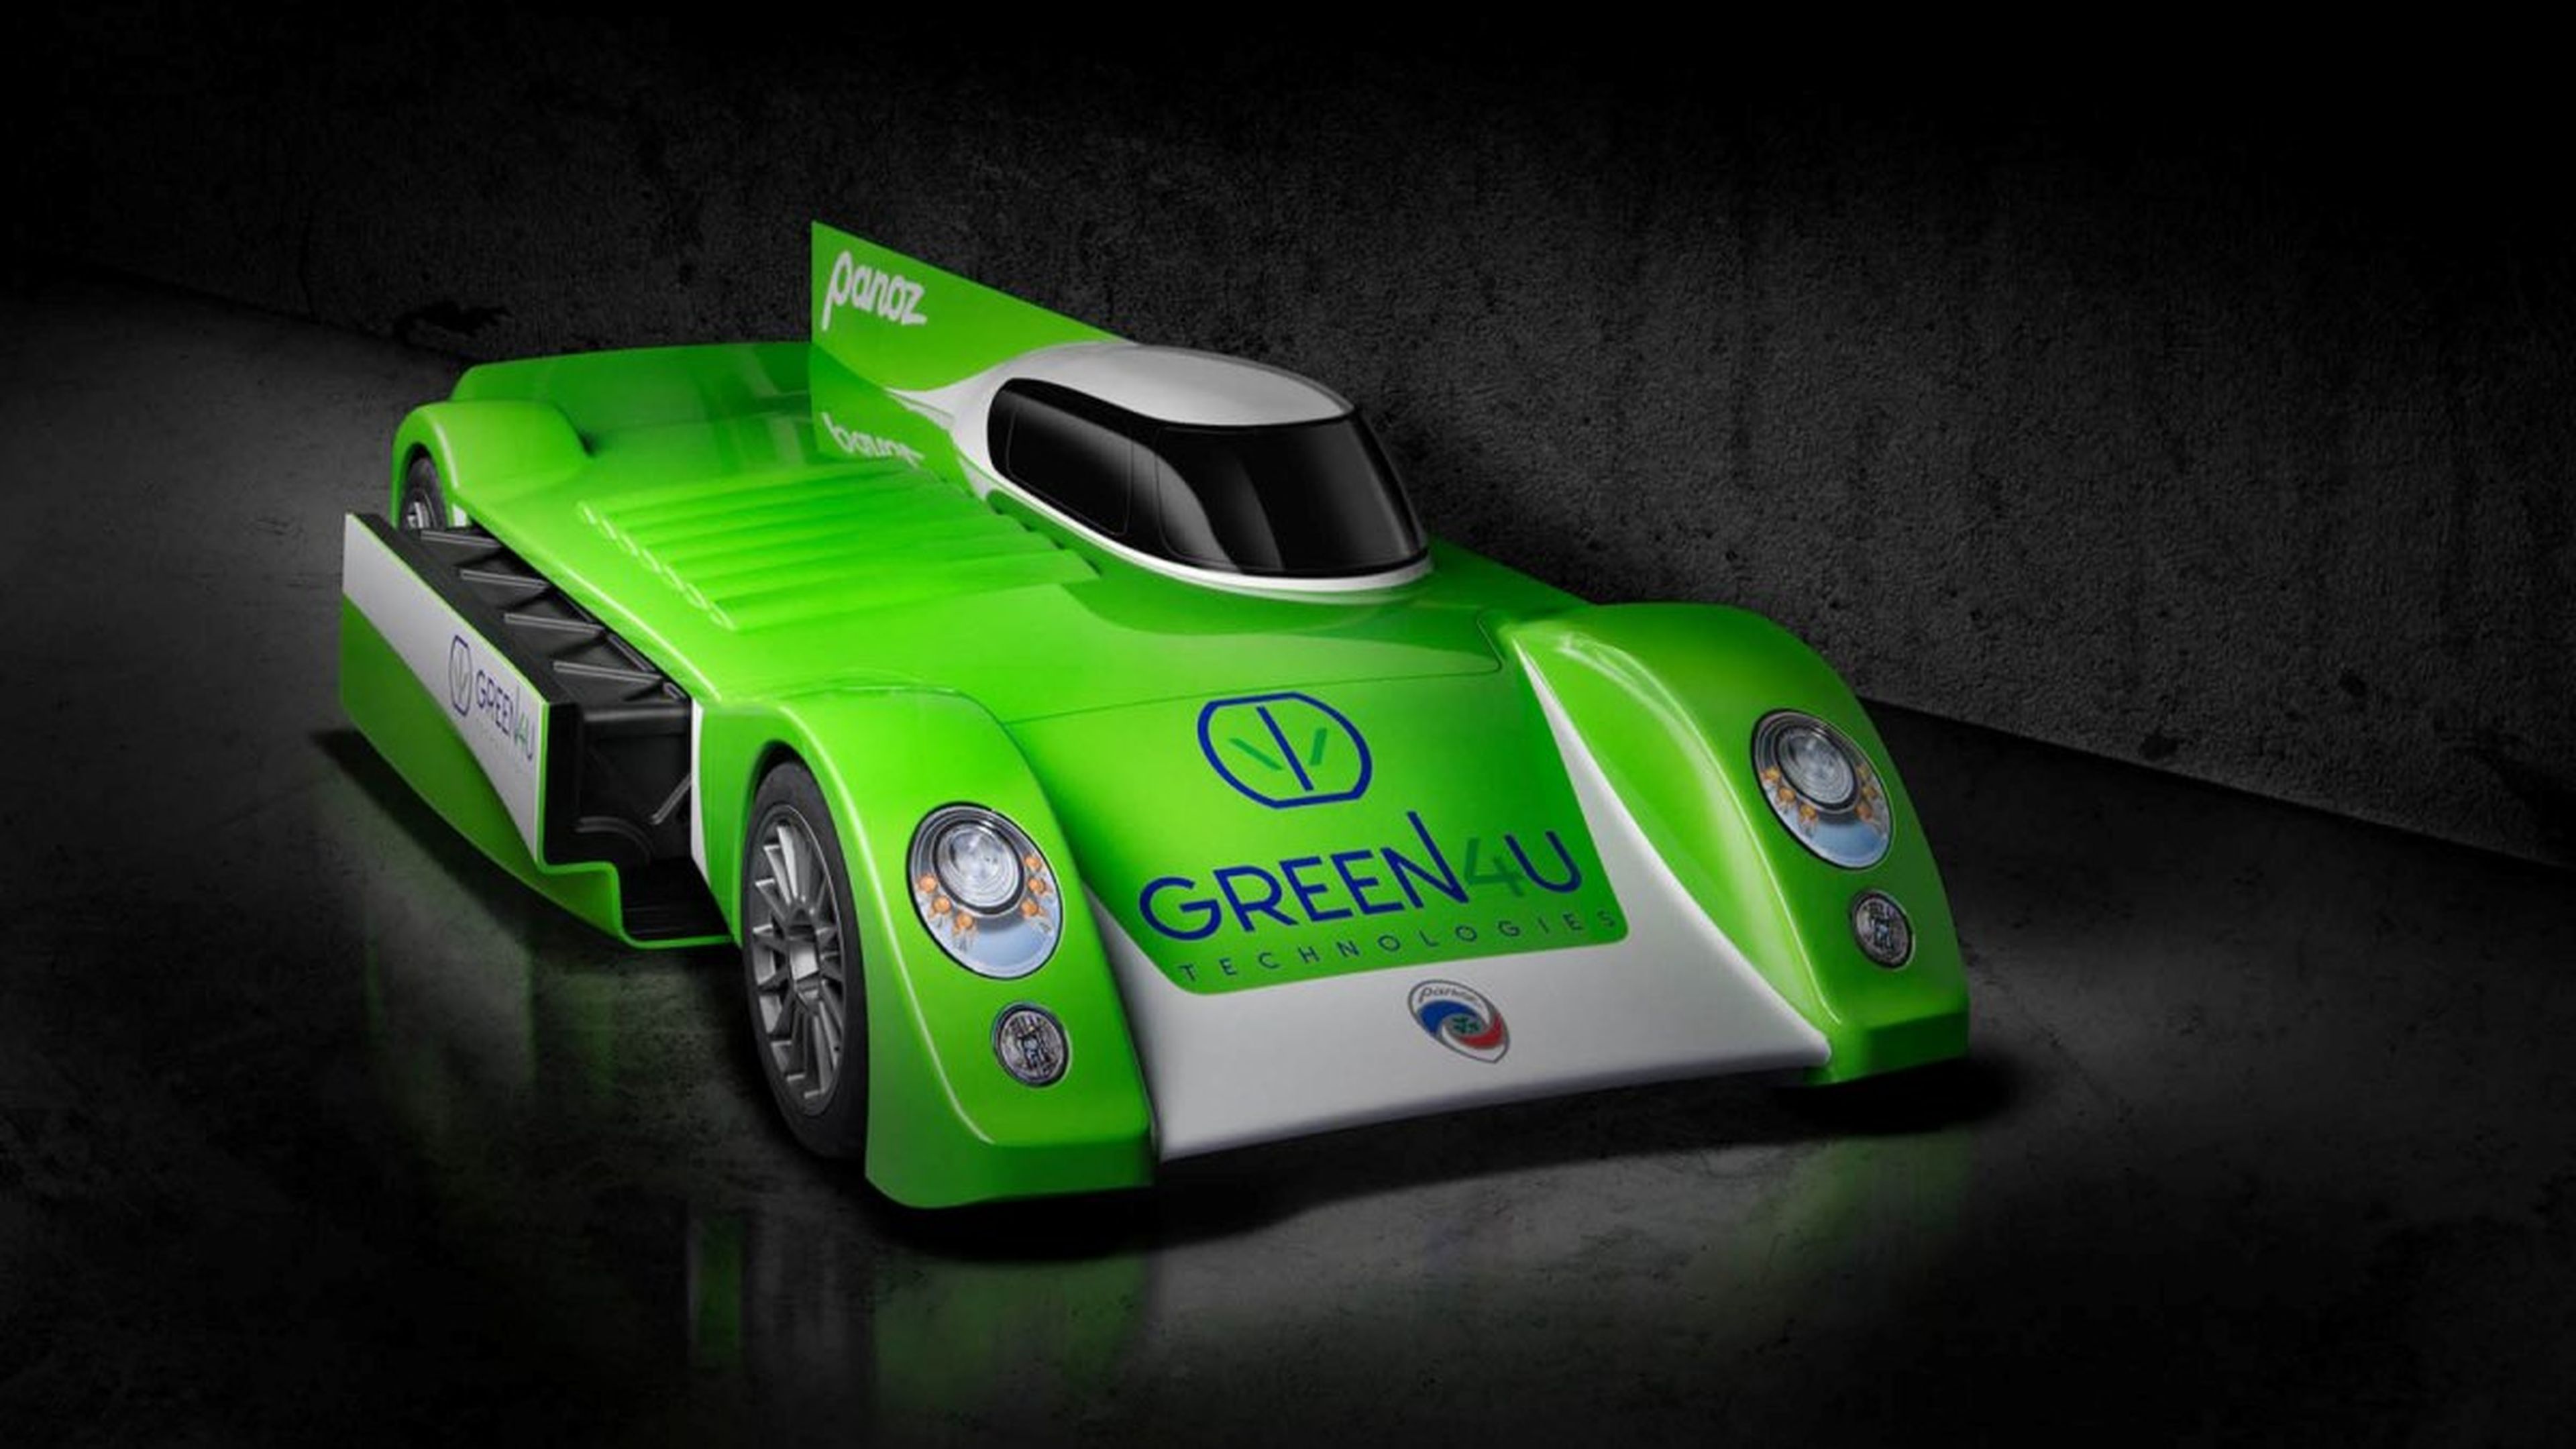 Panoz Green4U GT-EV